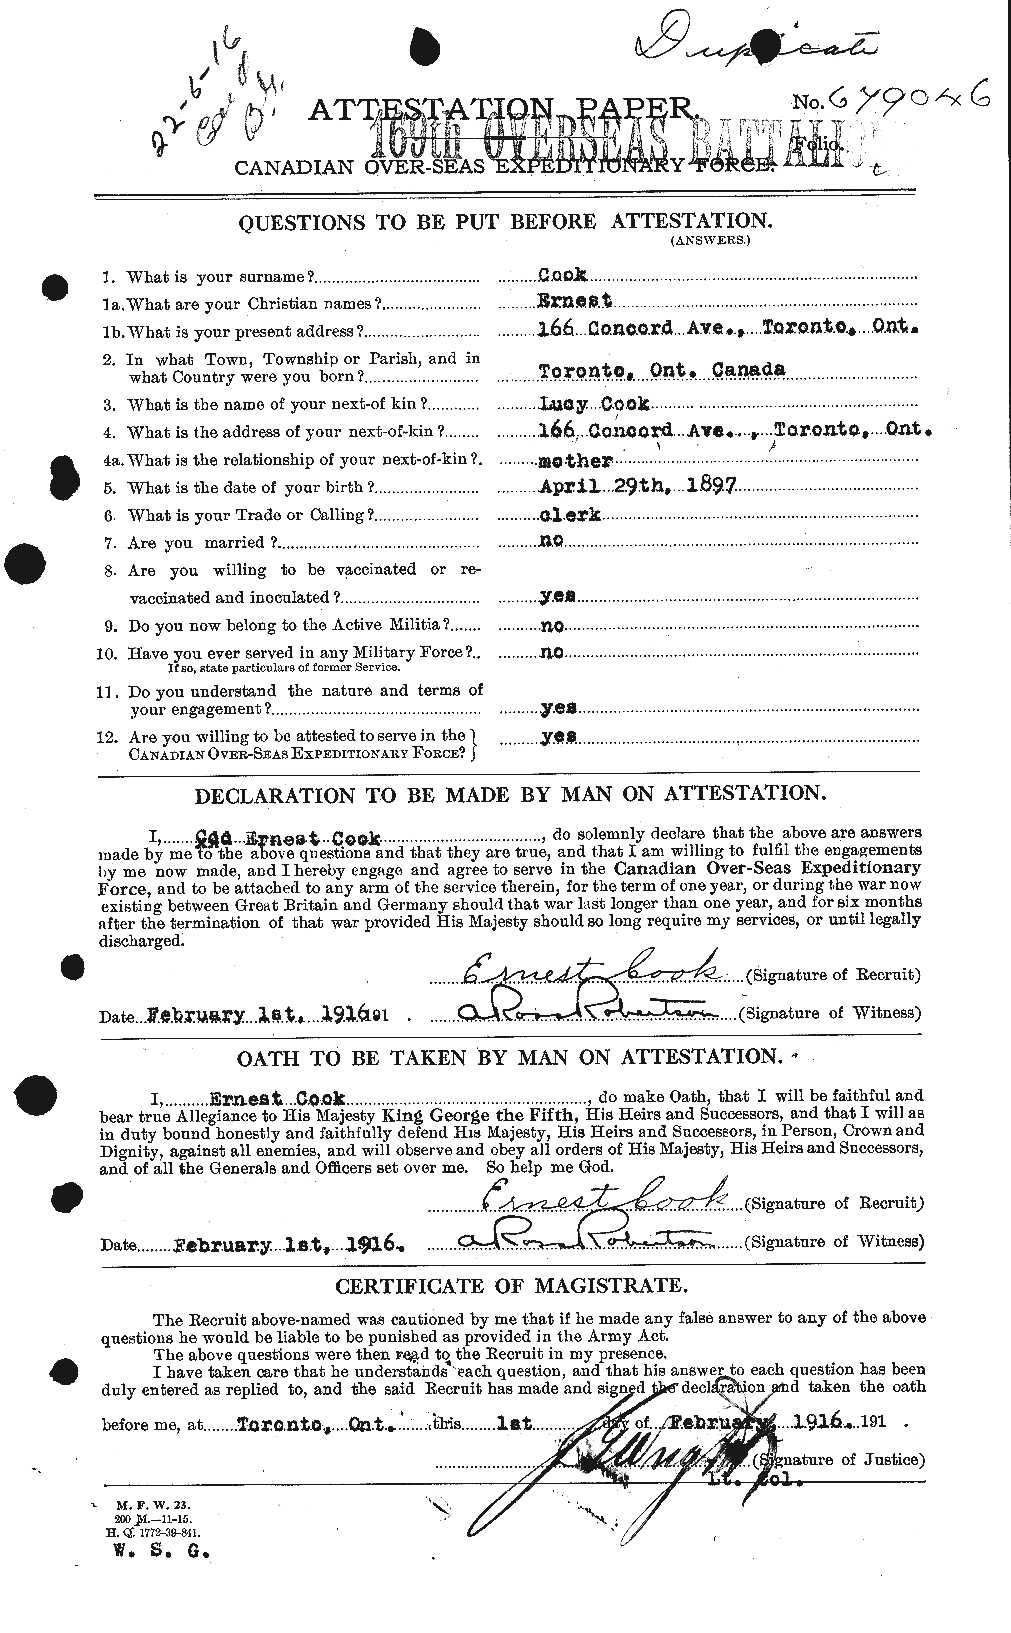 Dossiers du Personnel de la Première Guerre mondiale - CEC 073933a